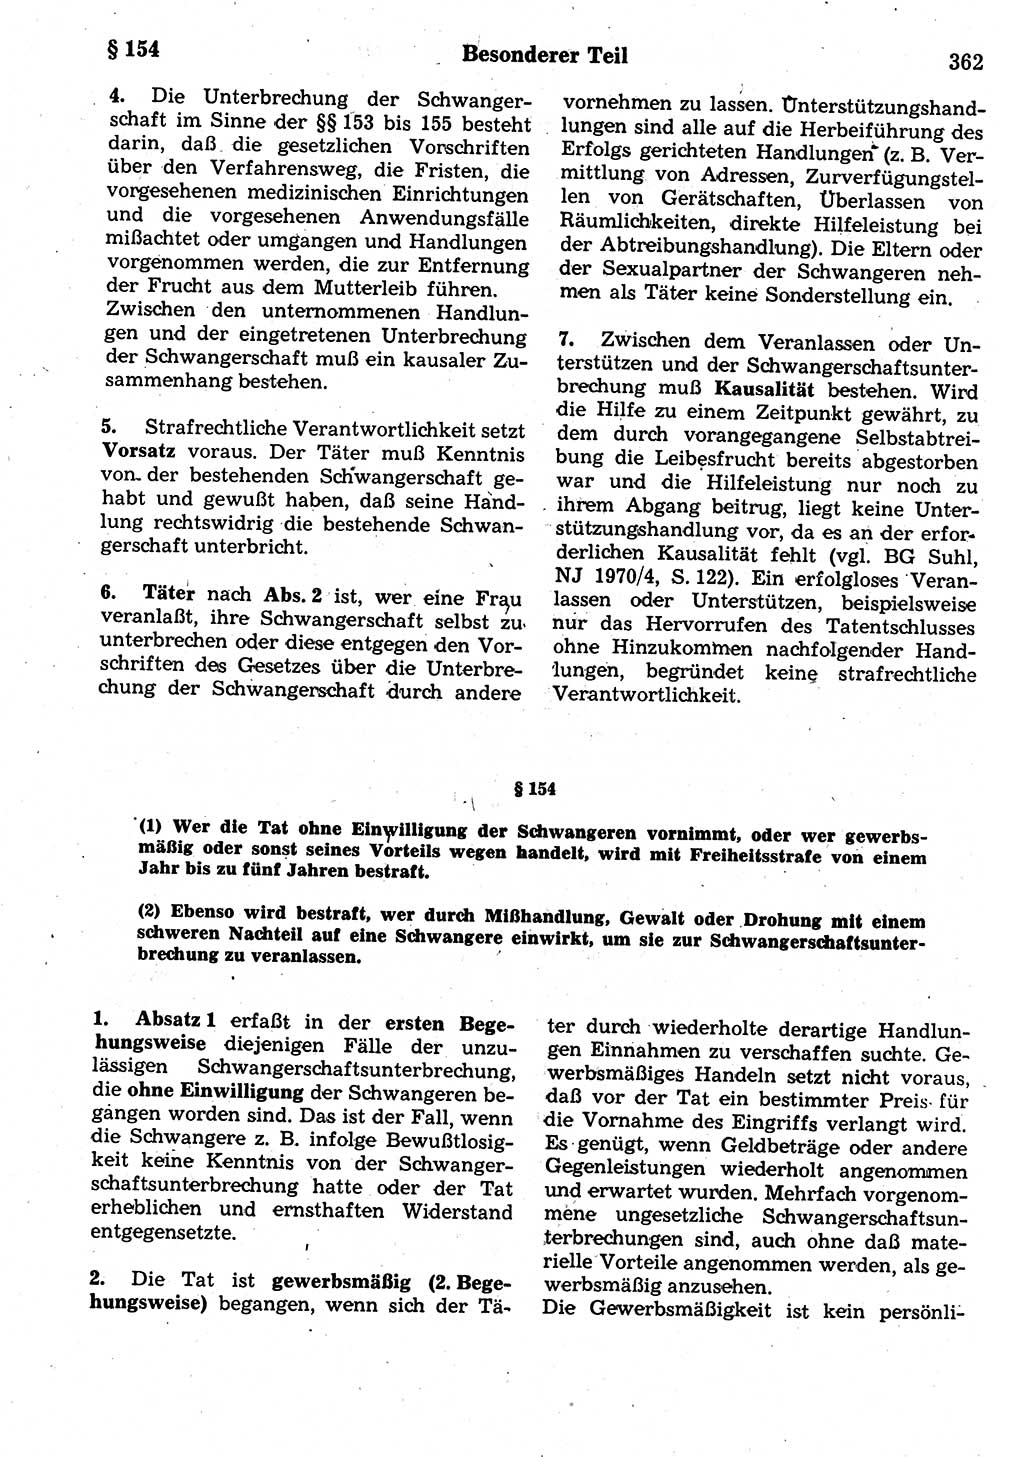 Strafrecht der Deutschen Demokratischen Republik (DDR), Kommentar zum Strafgesetzbuch (StGB) 1987, Seite 362 (Strafr. DDR Komm. StGB 1987, S. 362)